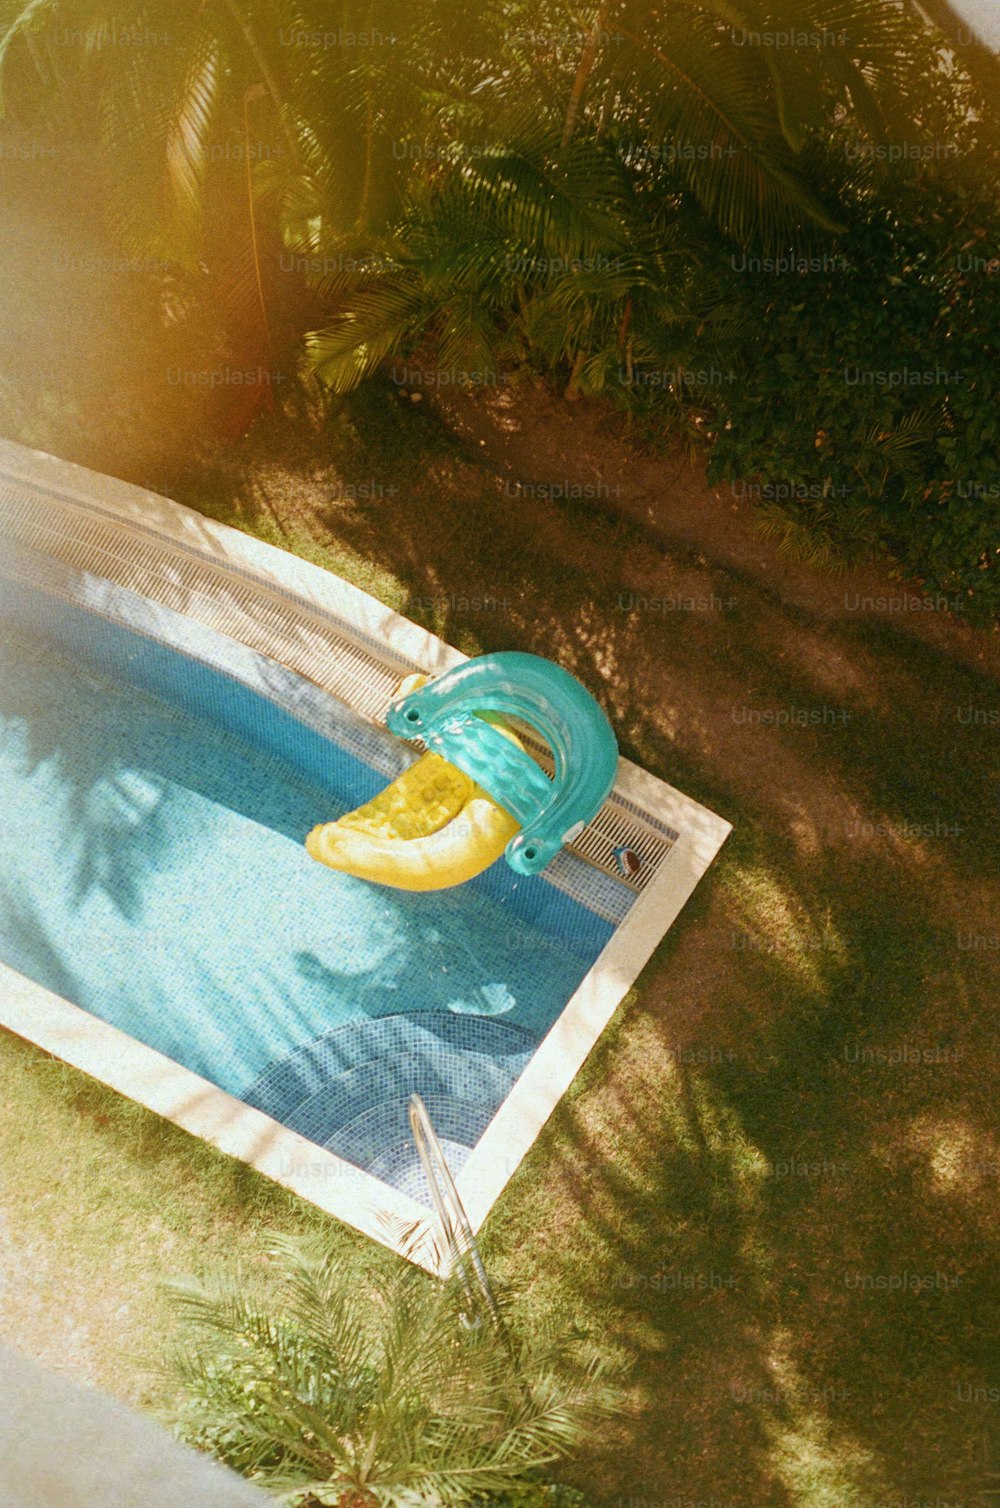 Une banane flottant dans une piscine avec une couverture bleue